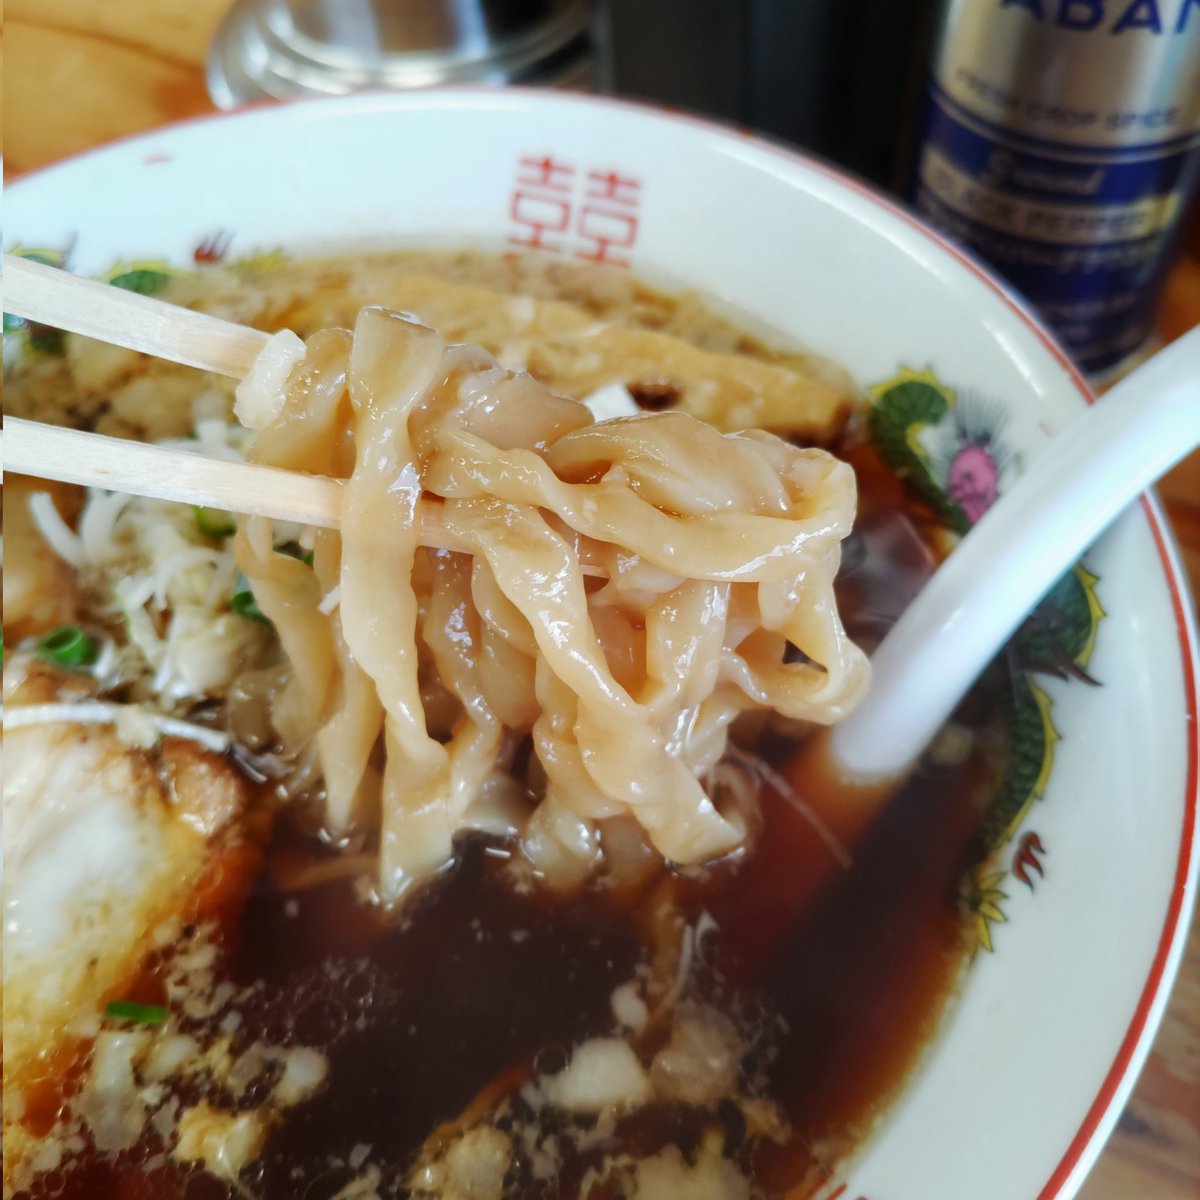 「湘南の手前」戸塚区汲沢町。デロ麺が特徴でかなり好みは別れると思うが、自分は好きです( ◜ᴗ◝ )